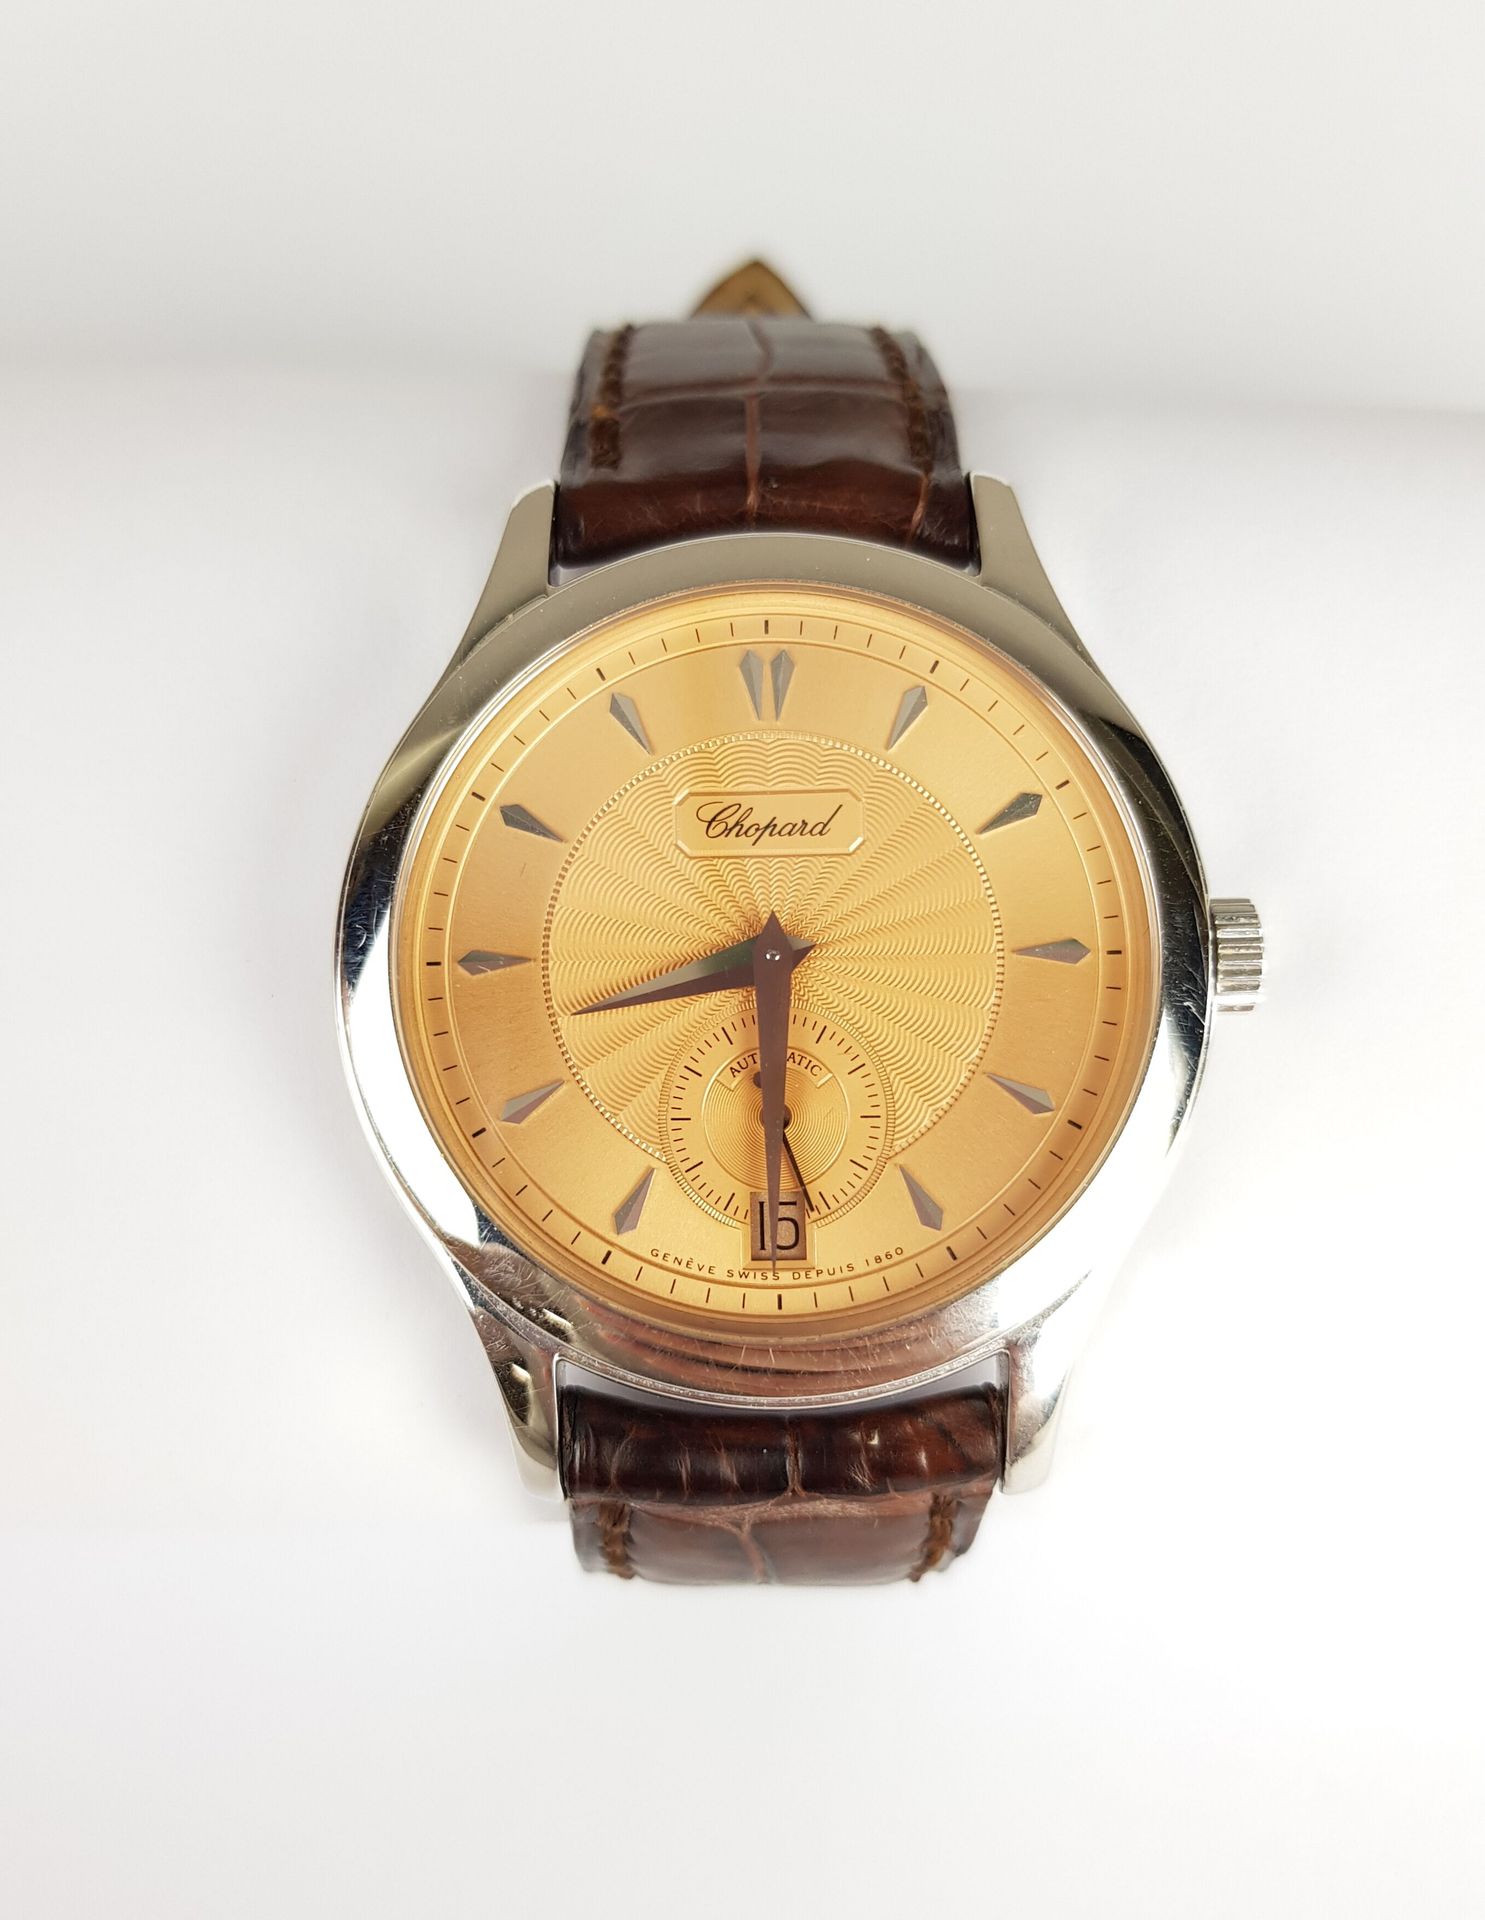 Null Precio inicial: 2 500 €.

CHOPARD

Serie limitada L.U.C.

Reloj de oro blan&hellip;